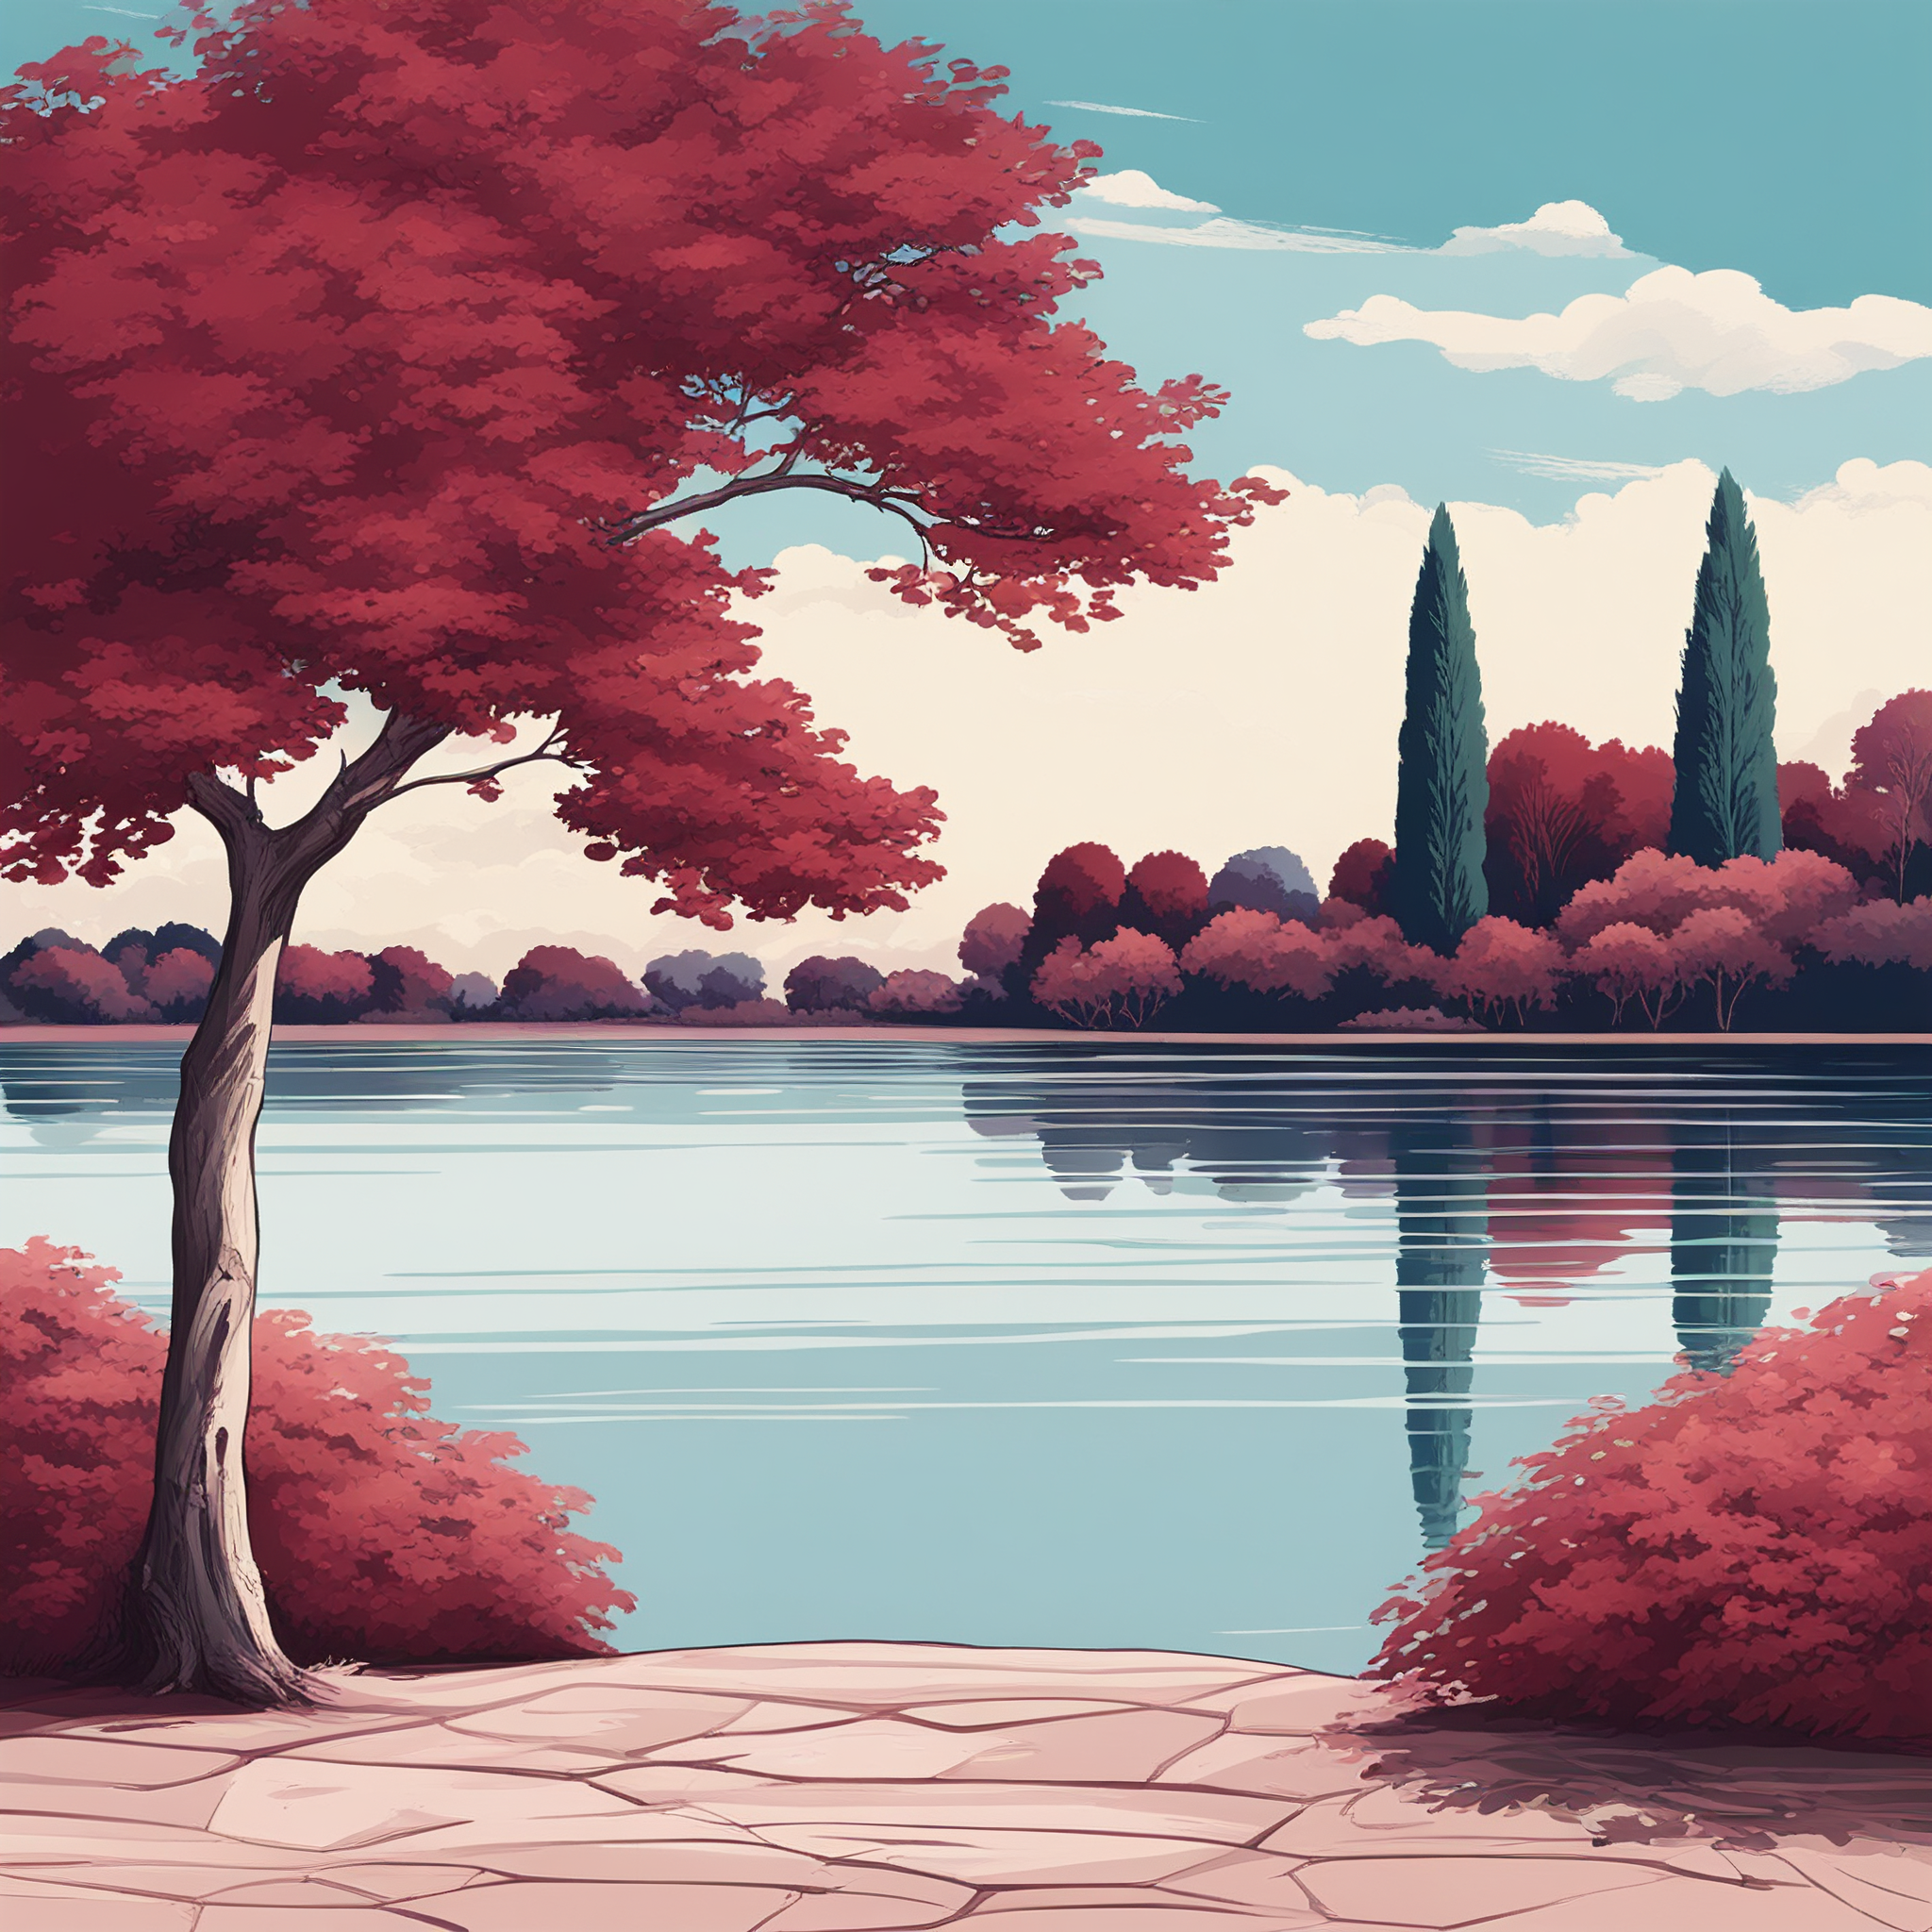 AI Lake and Trees